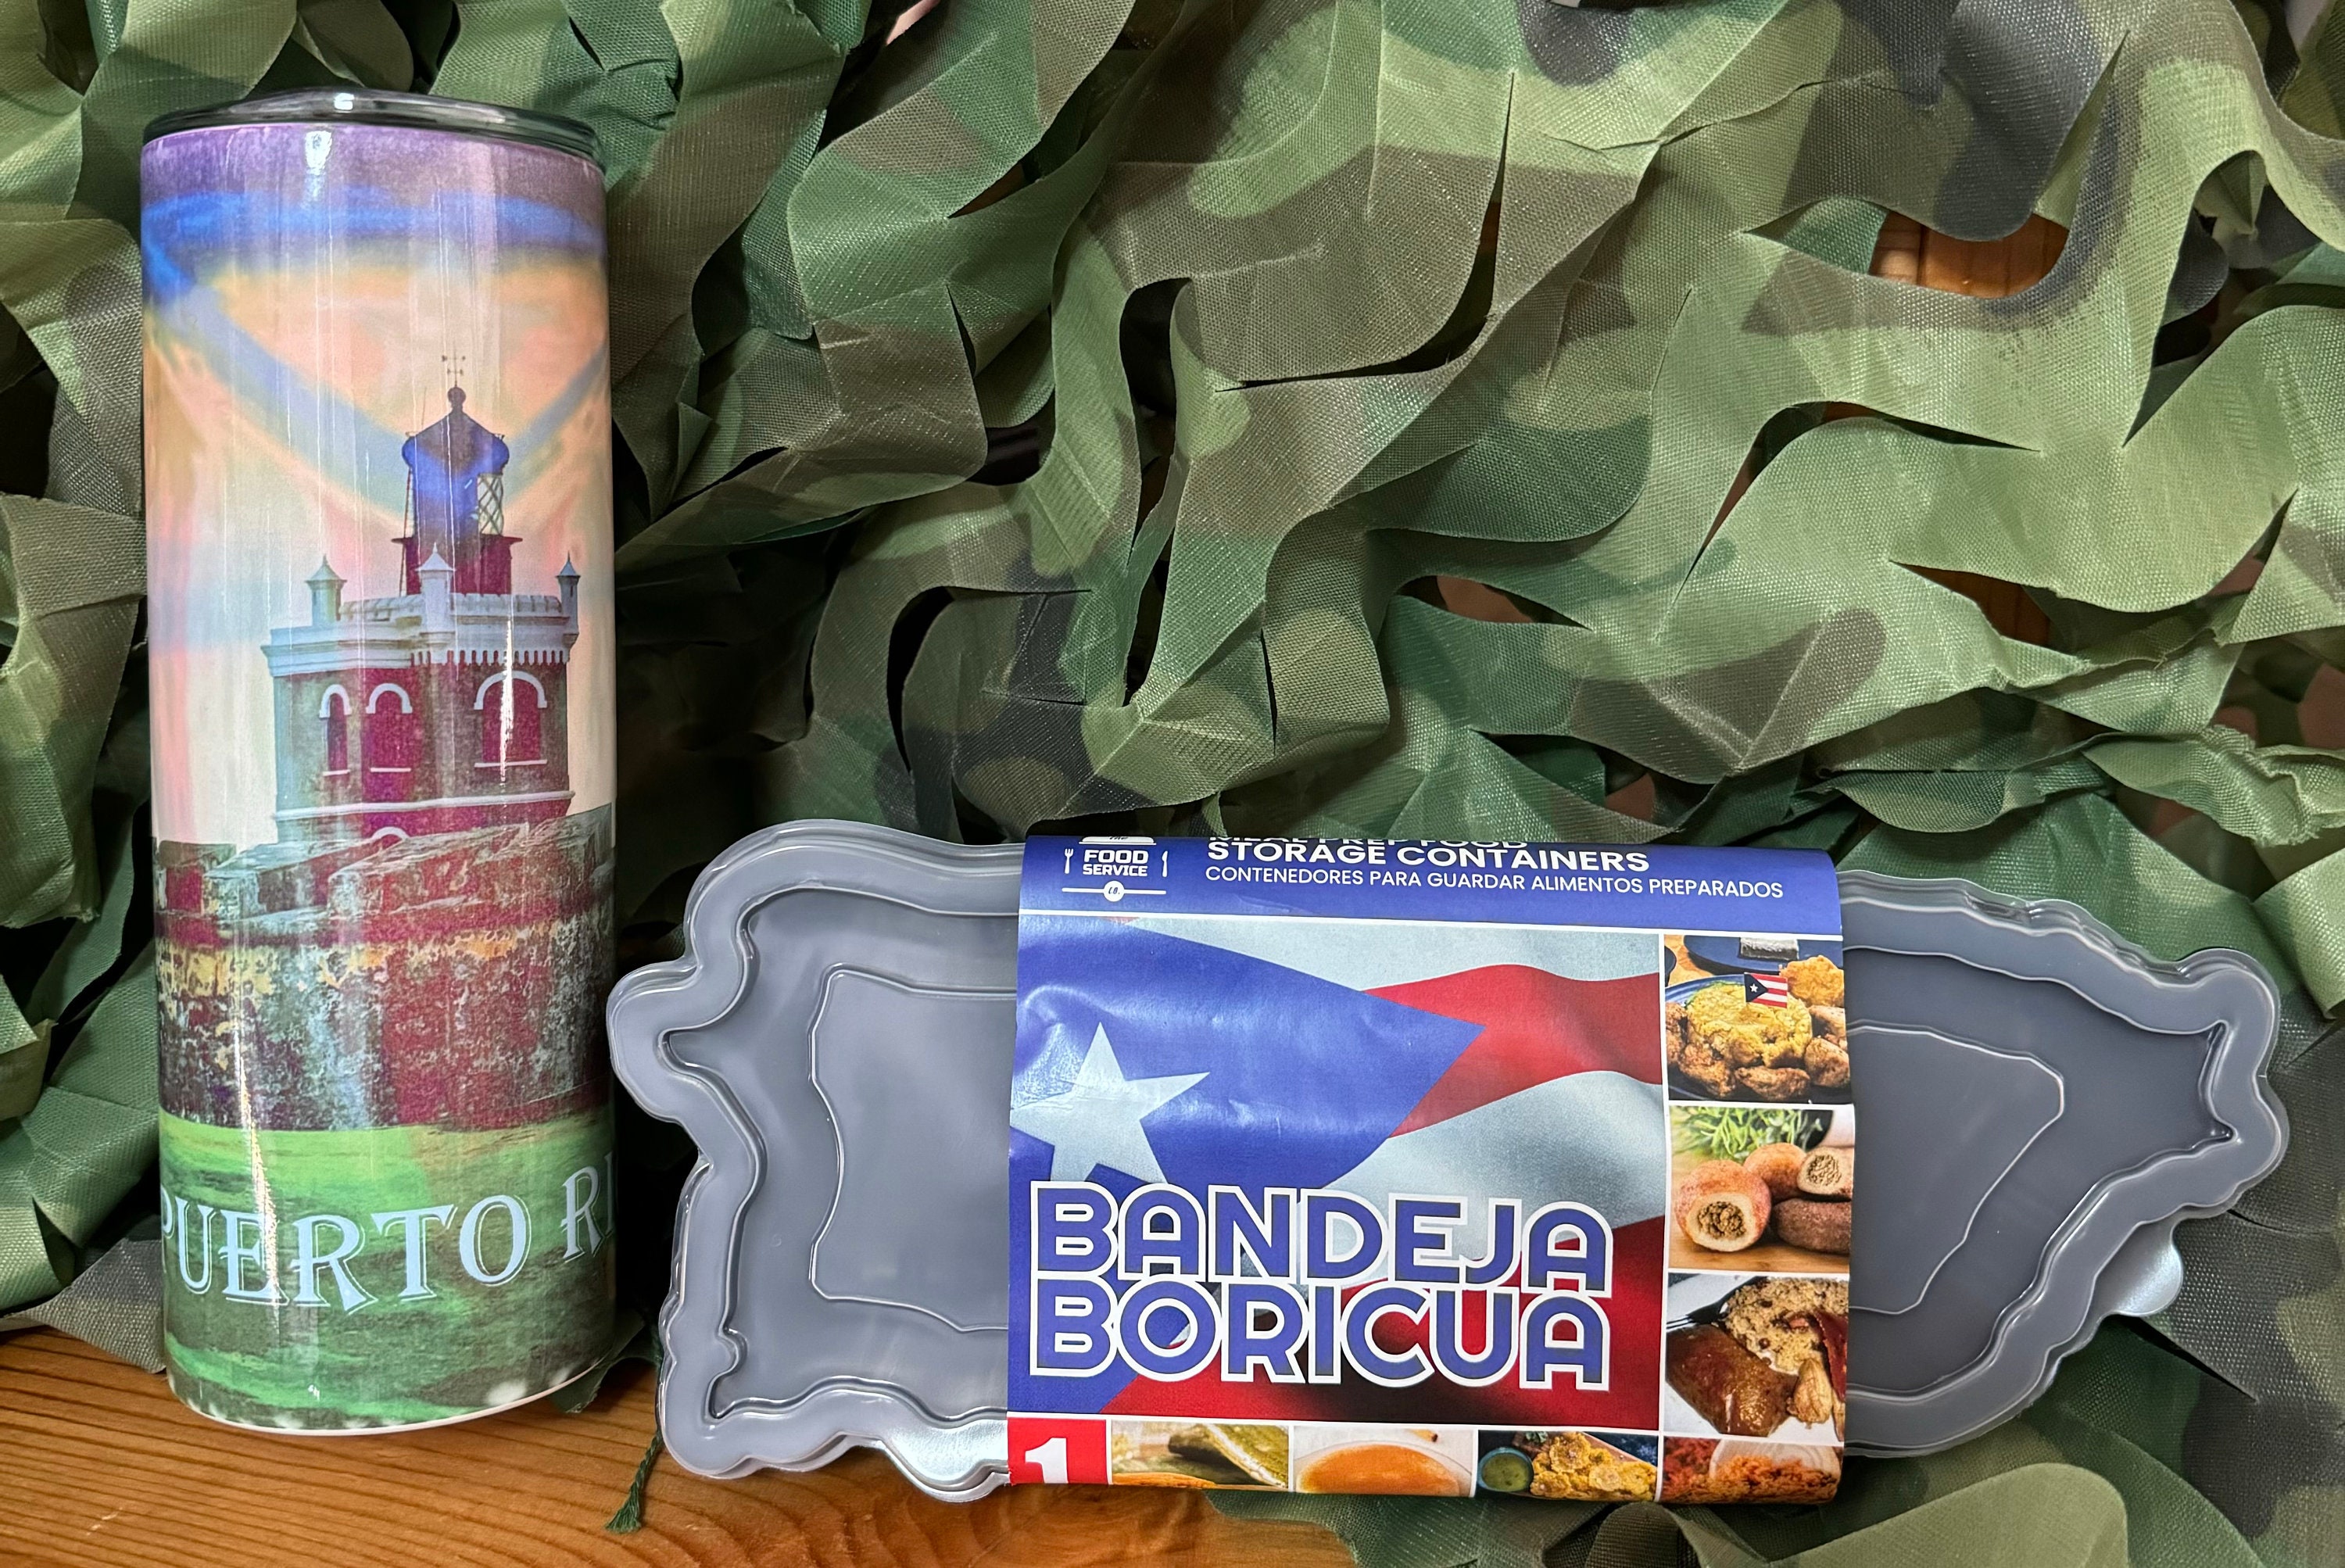 Bandeja Boricua - Puerto Rico Shaped Storage Container